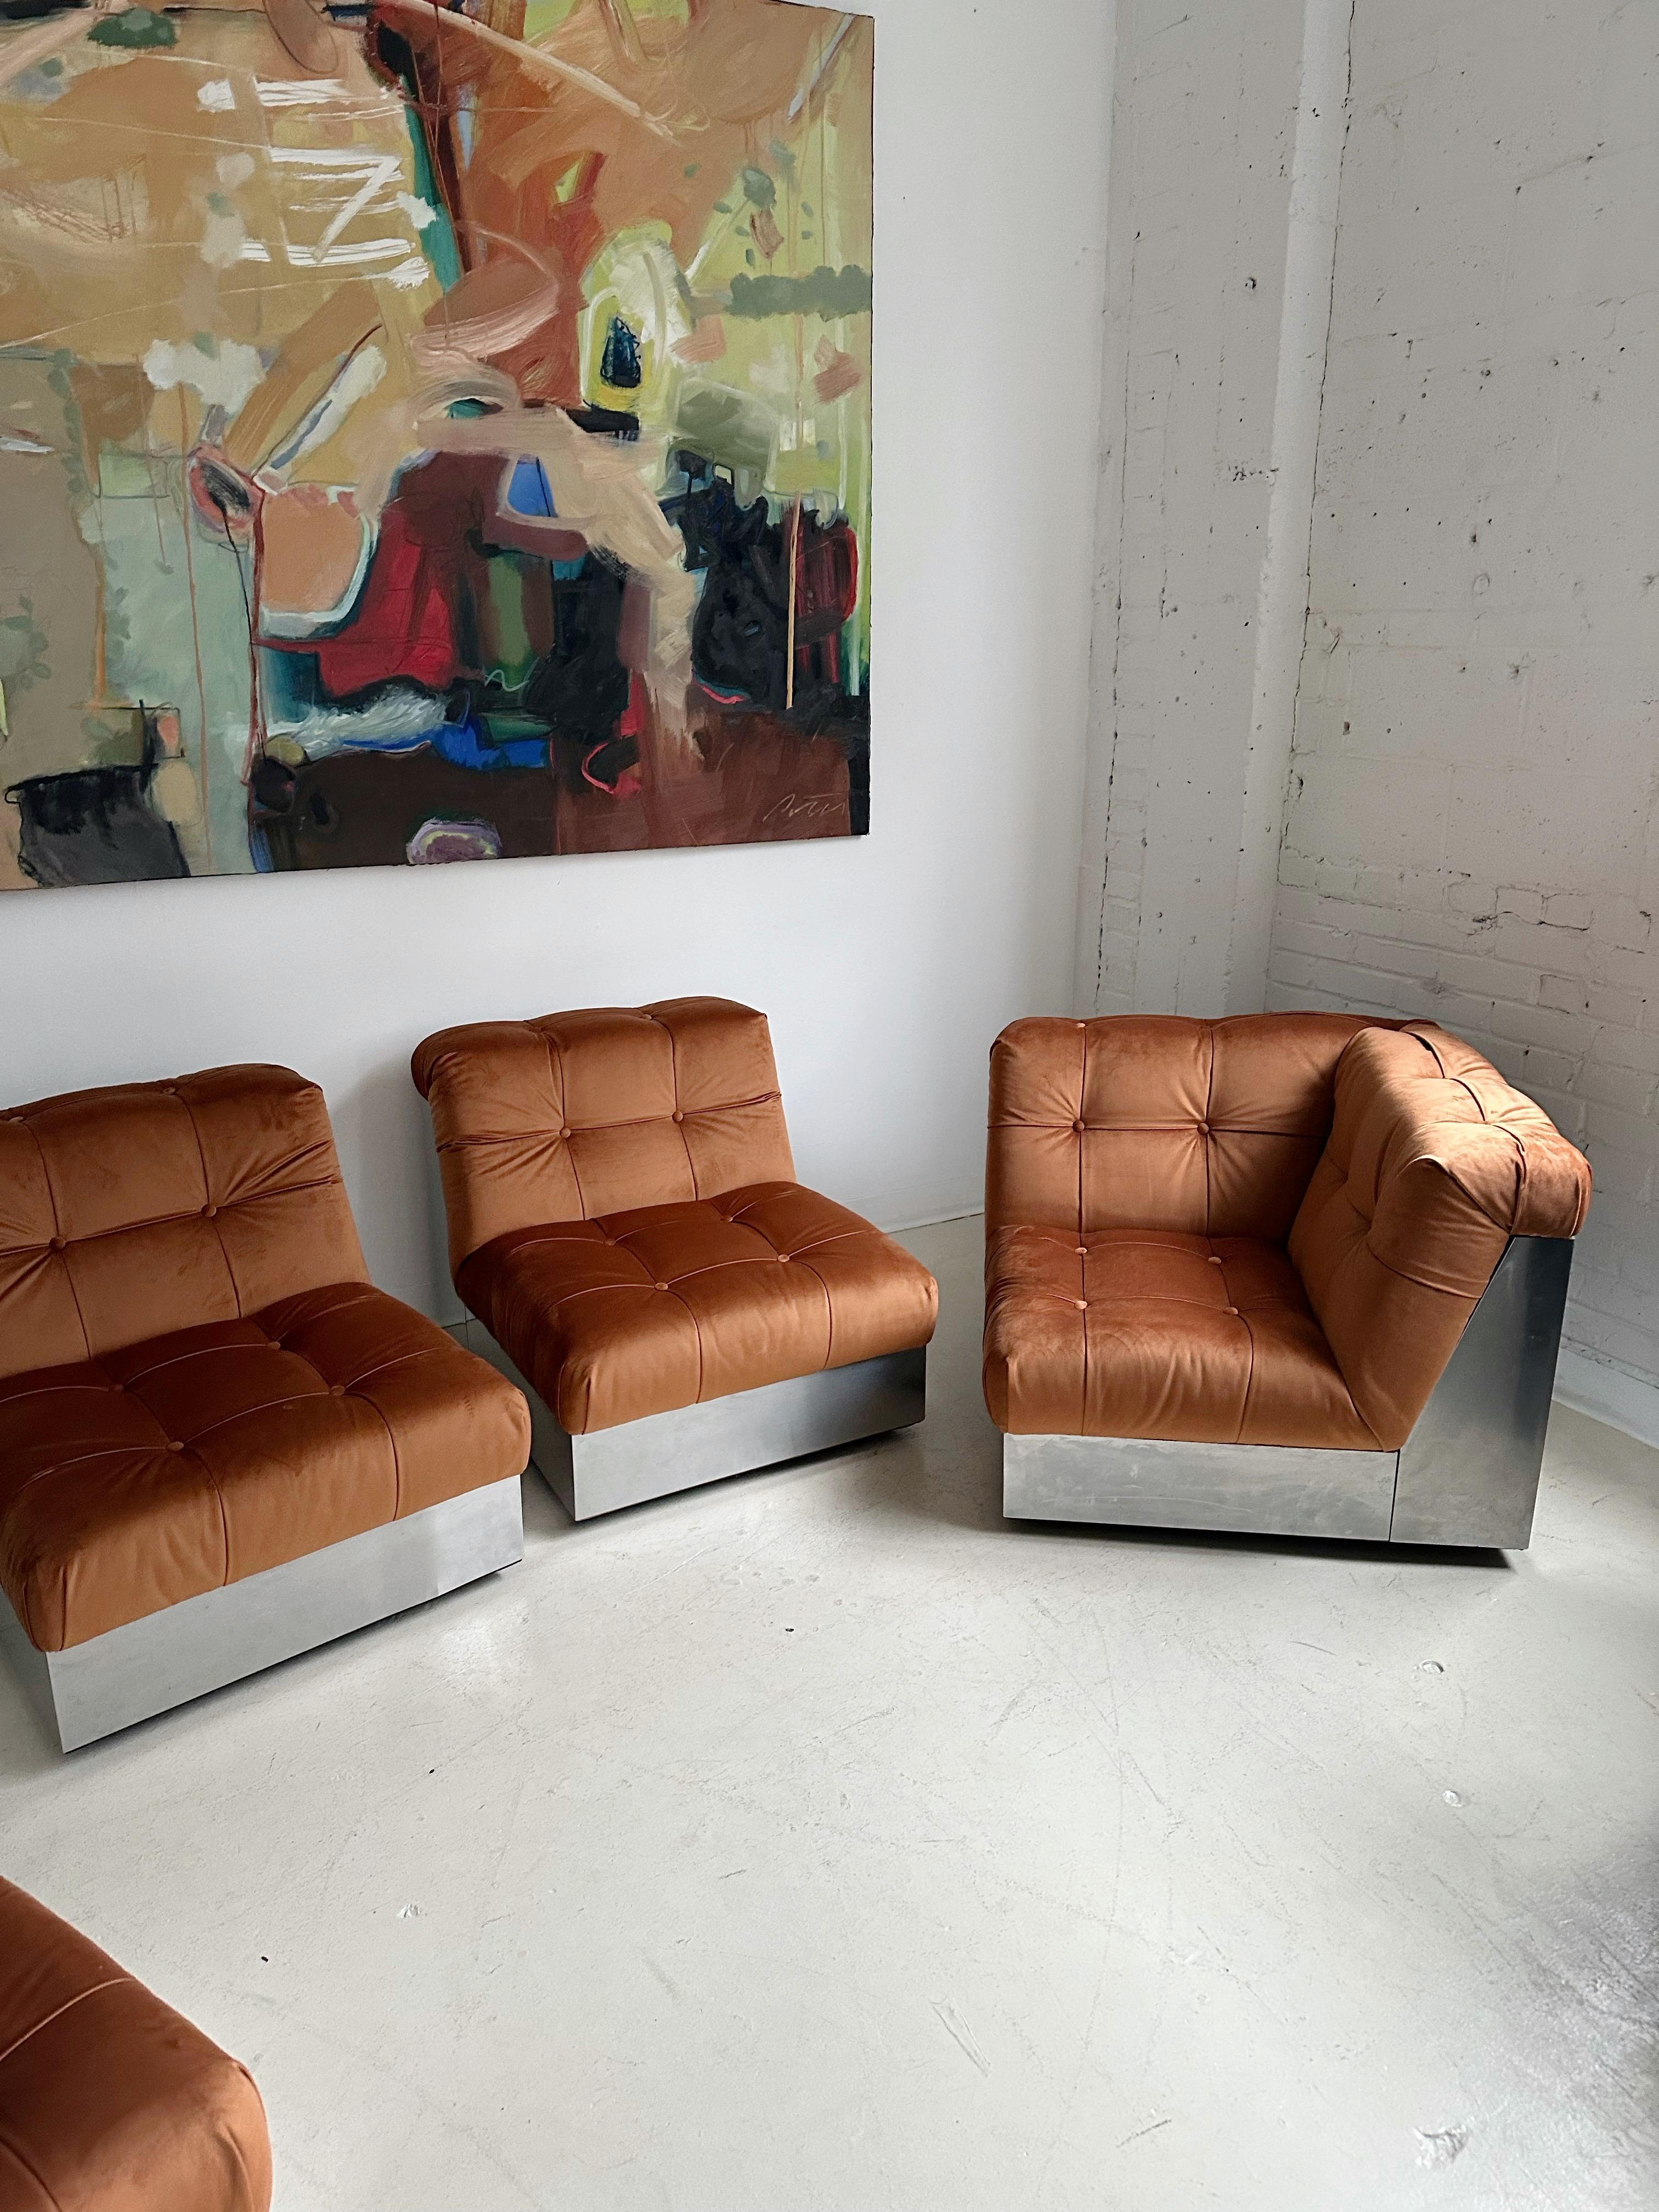 Samt & Stahlgestell 4 Pieces Modulares Sofa att. to Canasta by Giorgio Montani 9